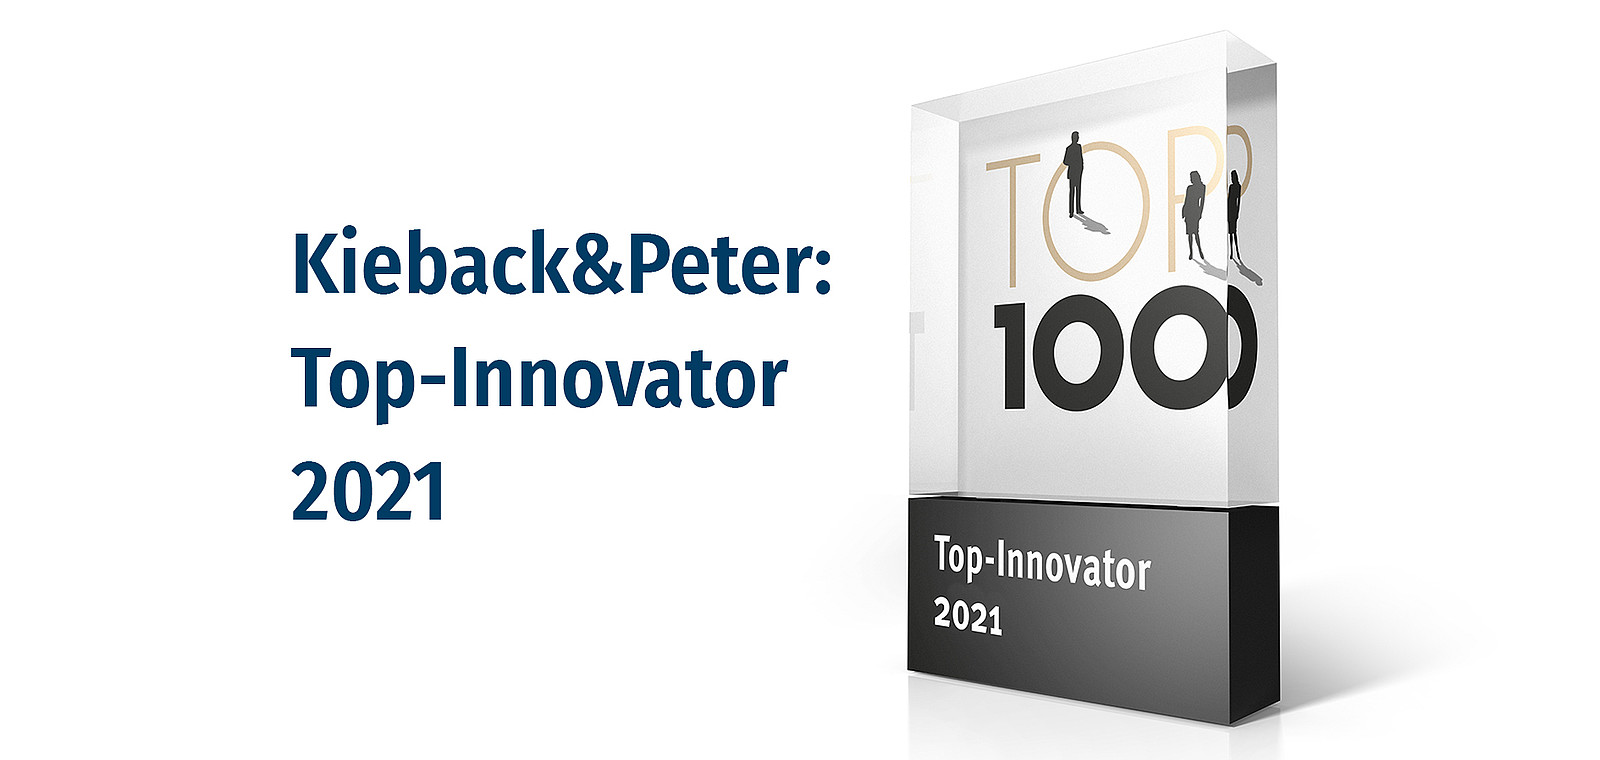 Kieback&Peter erhält die Auszeichnung Top-Innovator 2021